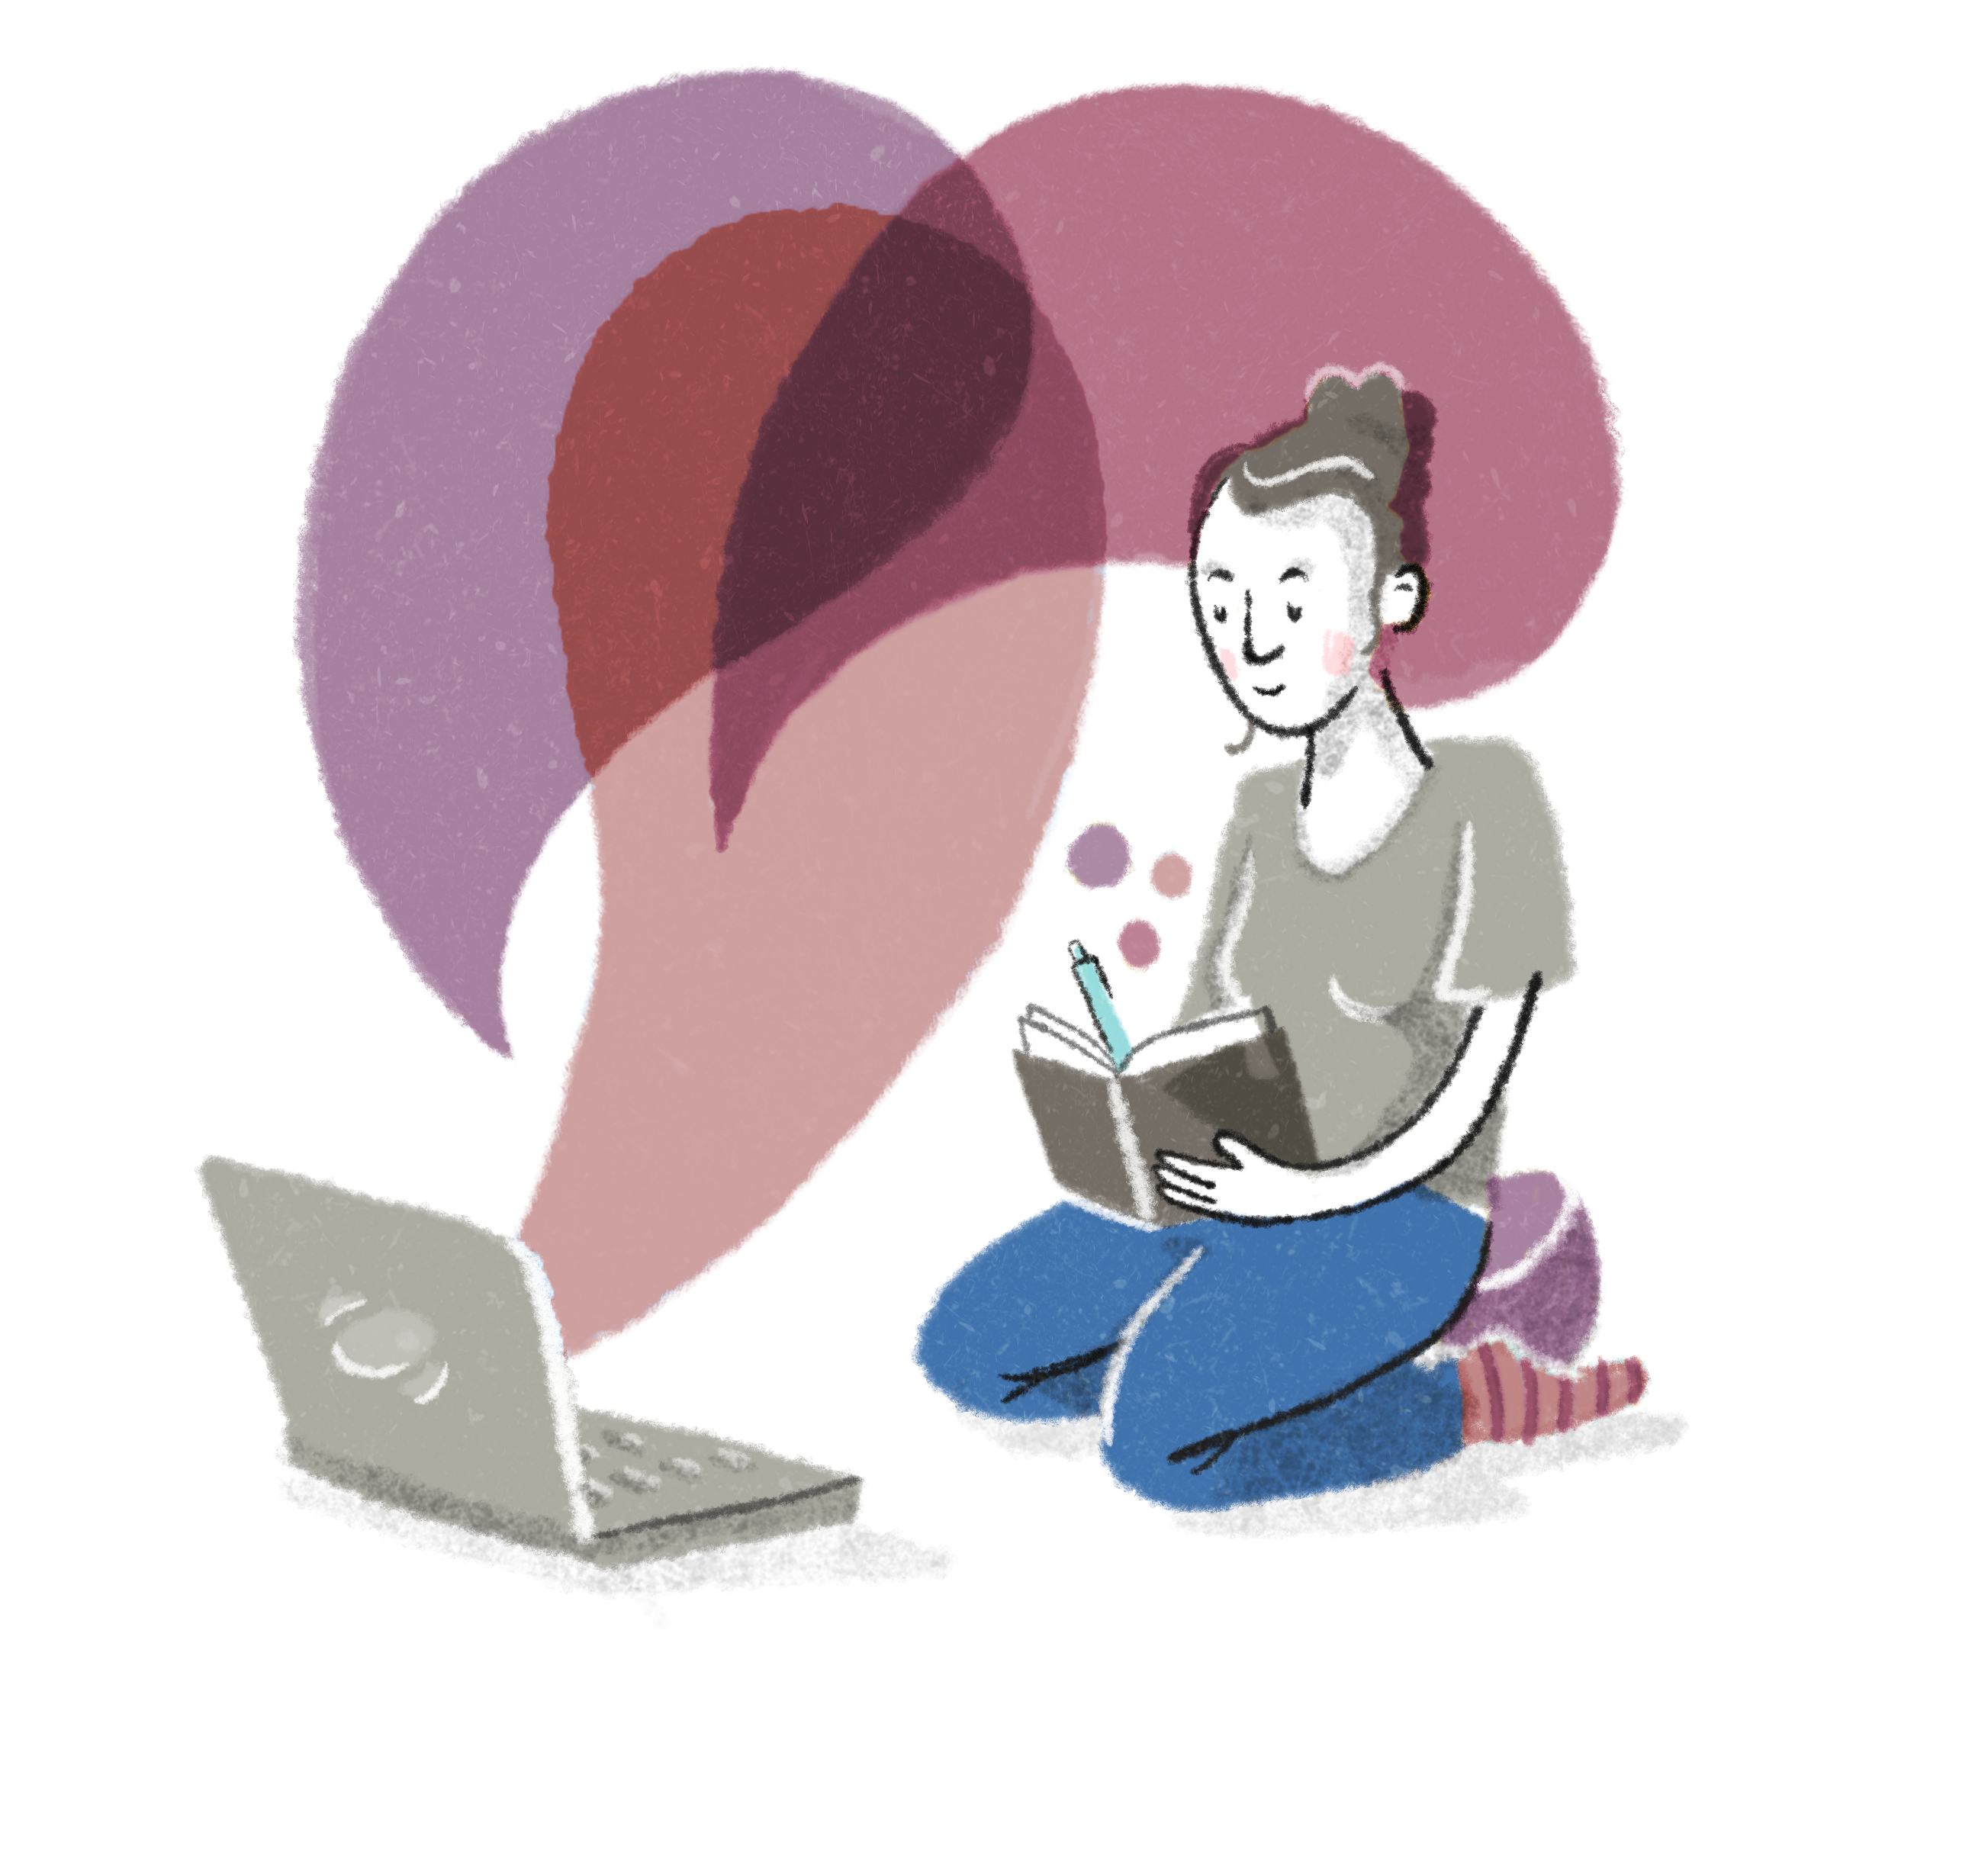 Eine Illustration zeigt eine Person, die vor einem Notebook kniet und in ein Buch schreibt